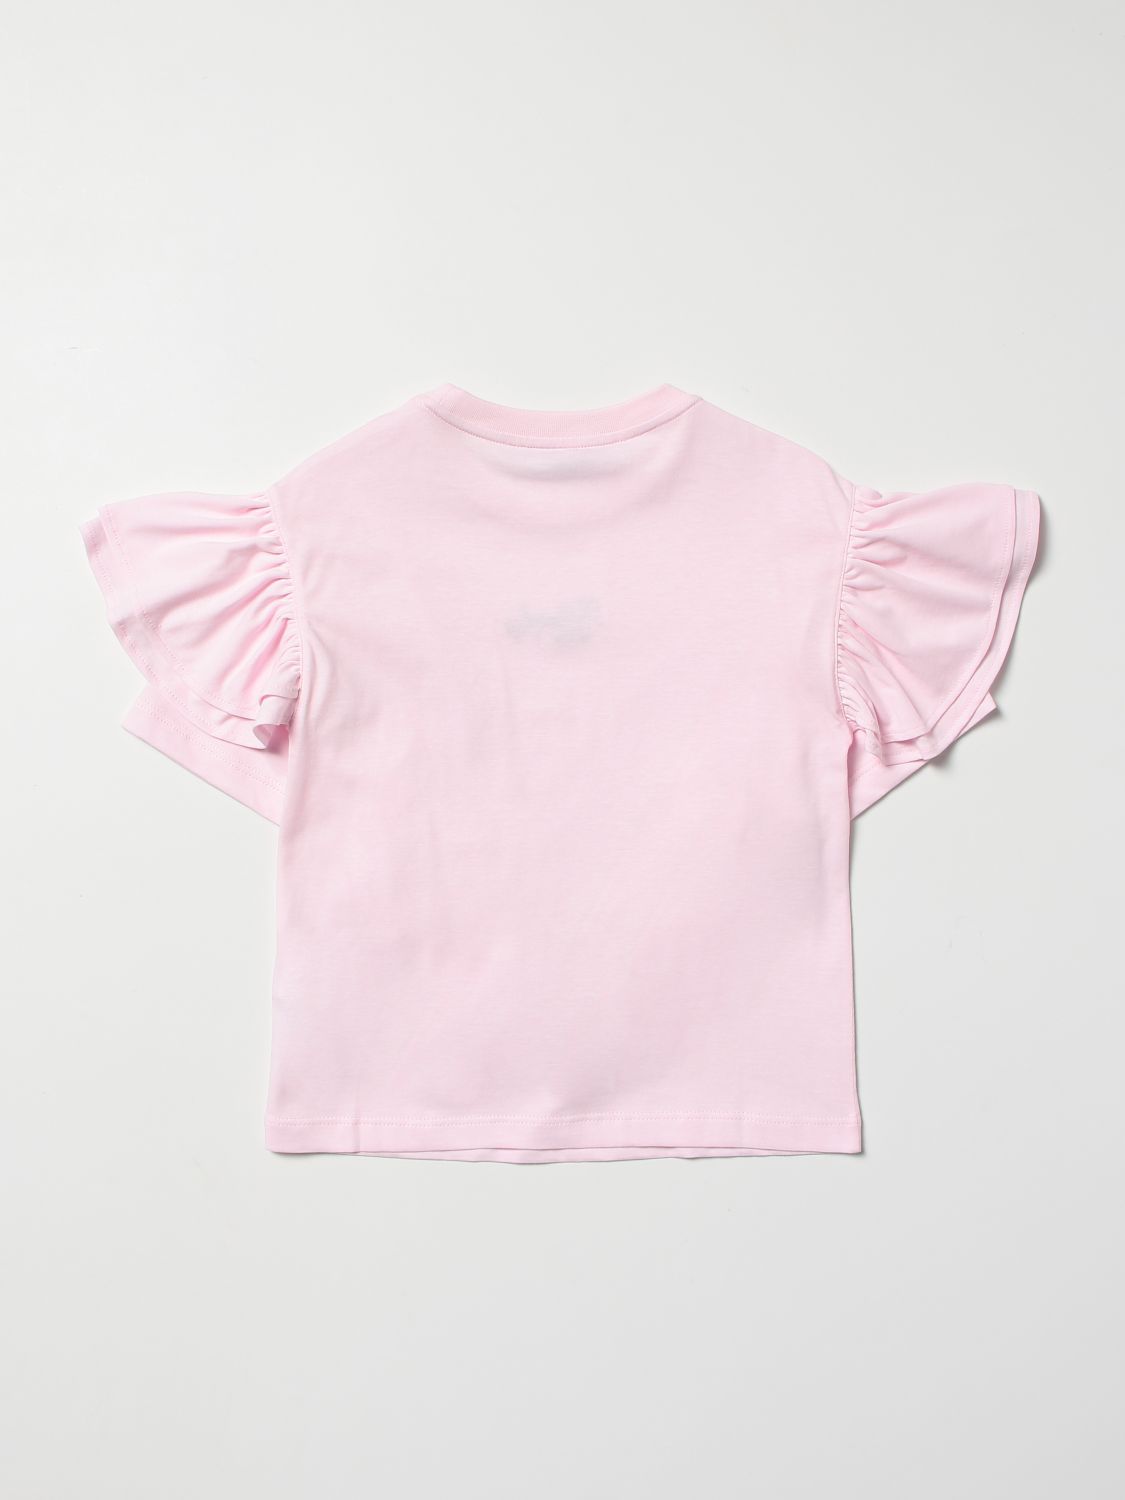 Camisetas Philosophy Di Lorenzo Serafini: Camisetas Philosophy Di Lorenzo Serafini para niña rosa 2